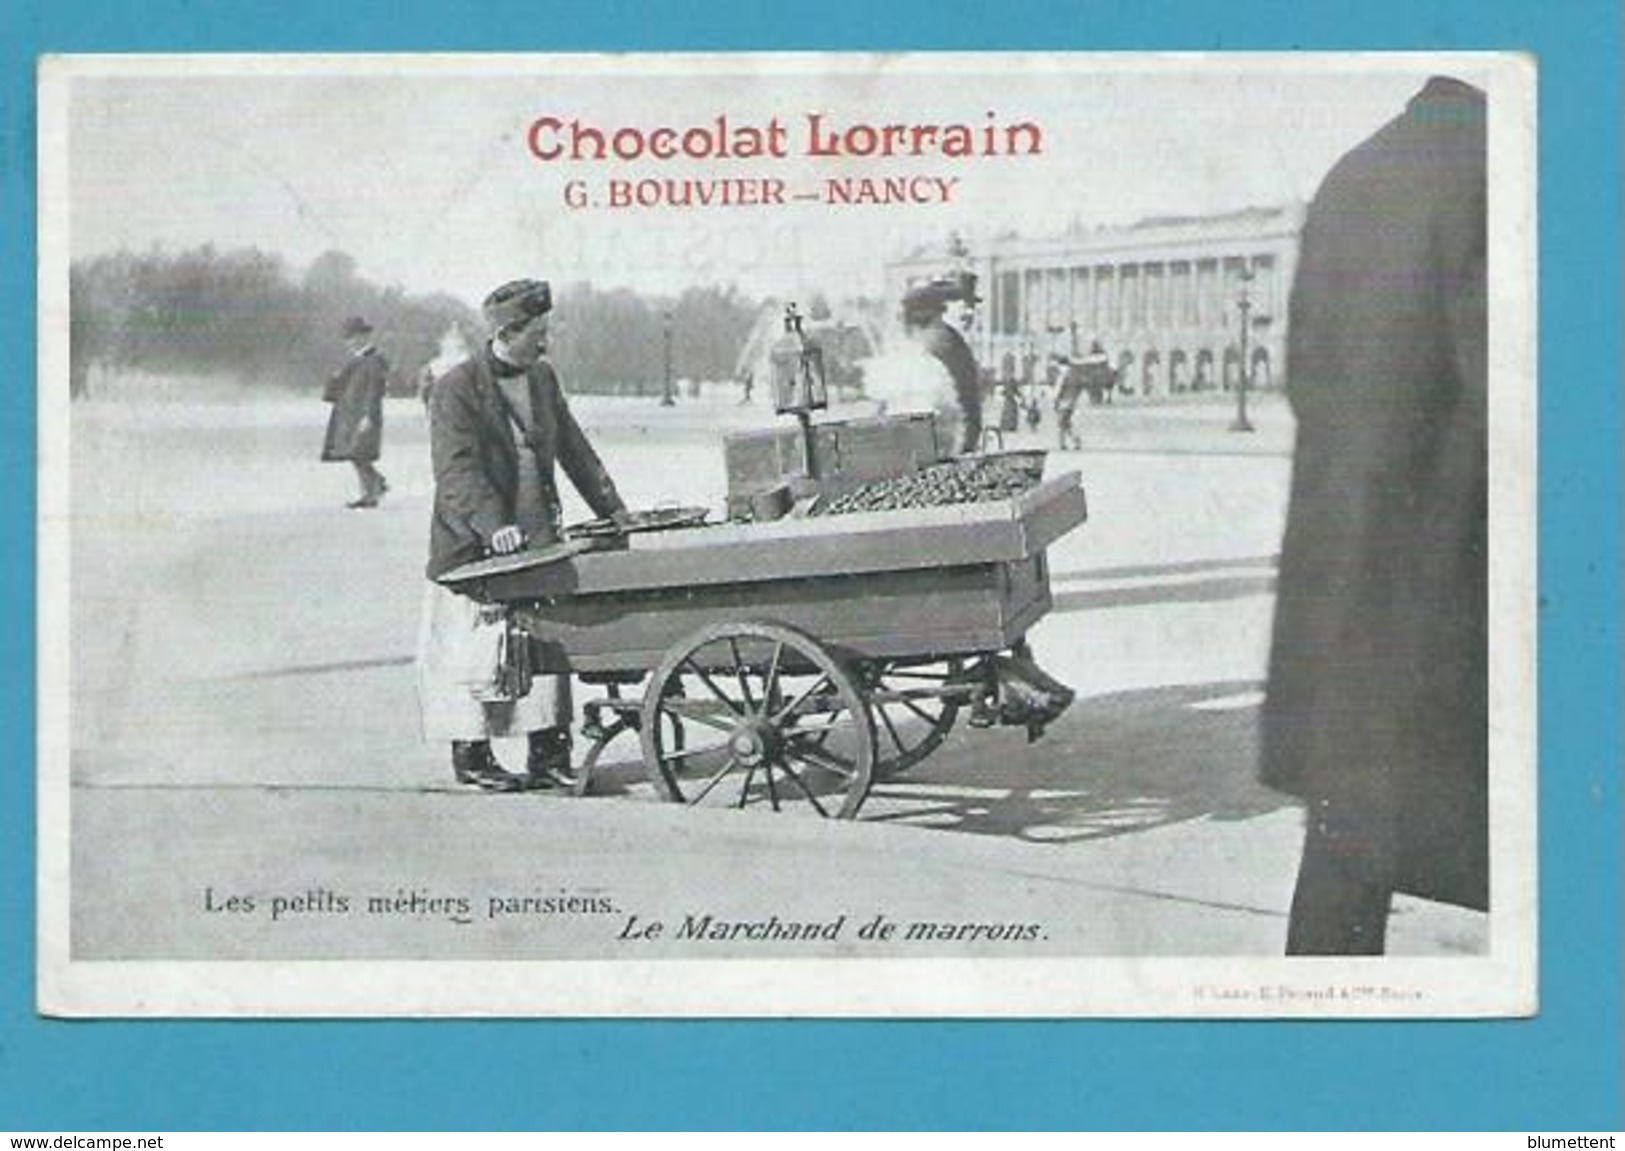 CPA LES PETITS METIERS PARISIENS Le Marchand De Marrons  - LAAS ET PECAUD - Publicité Chocolat Lorrain - Petits Métiers à Paris